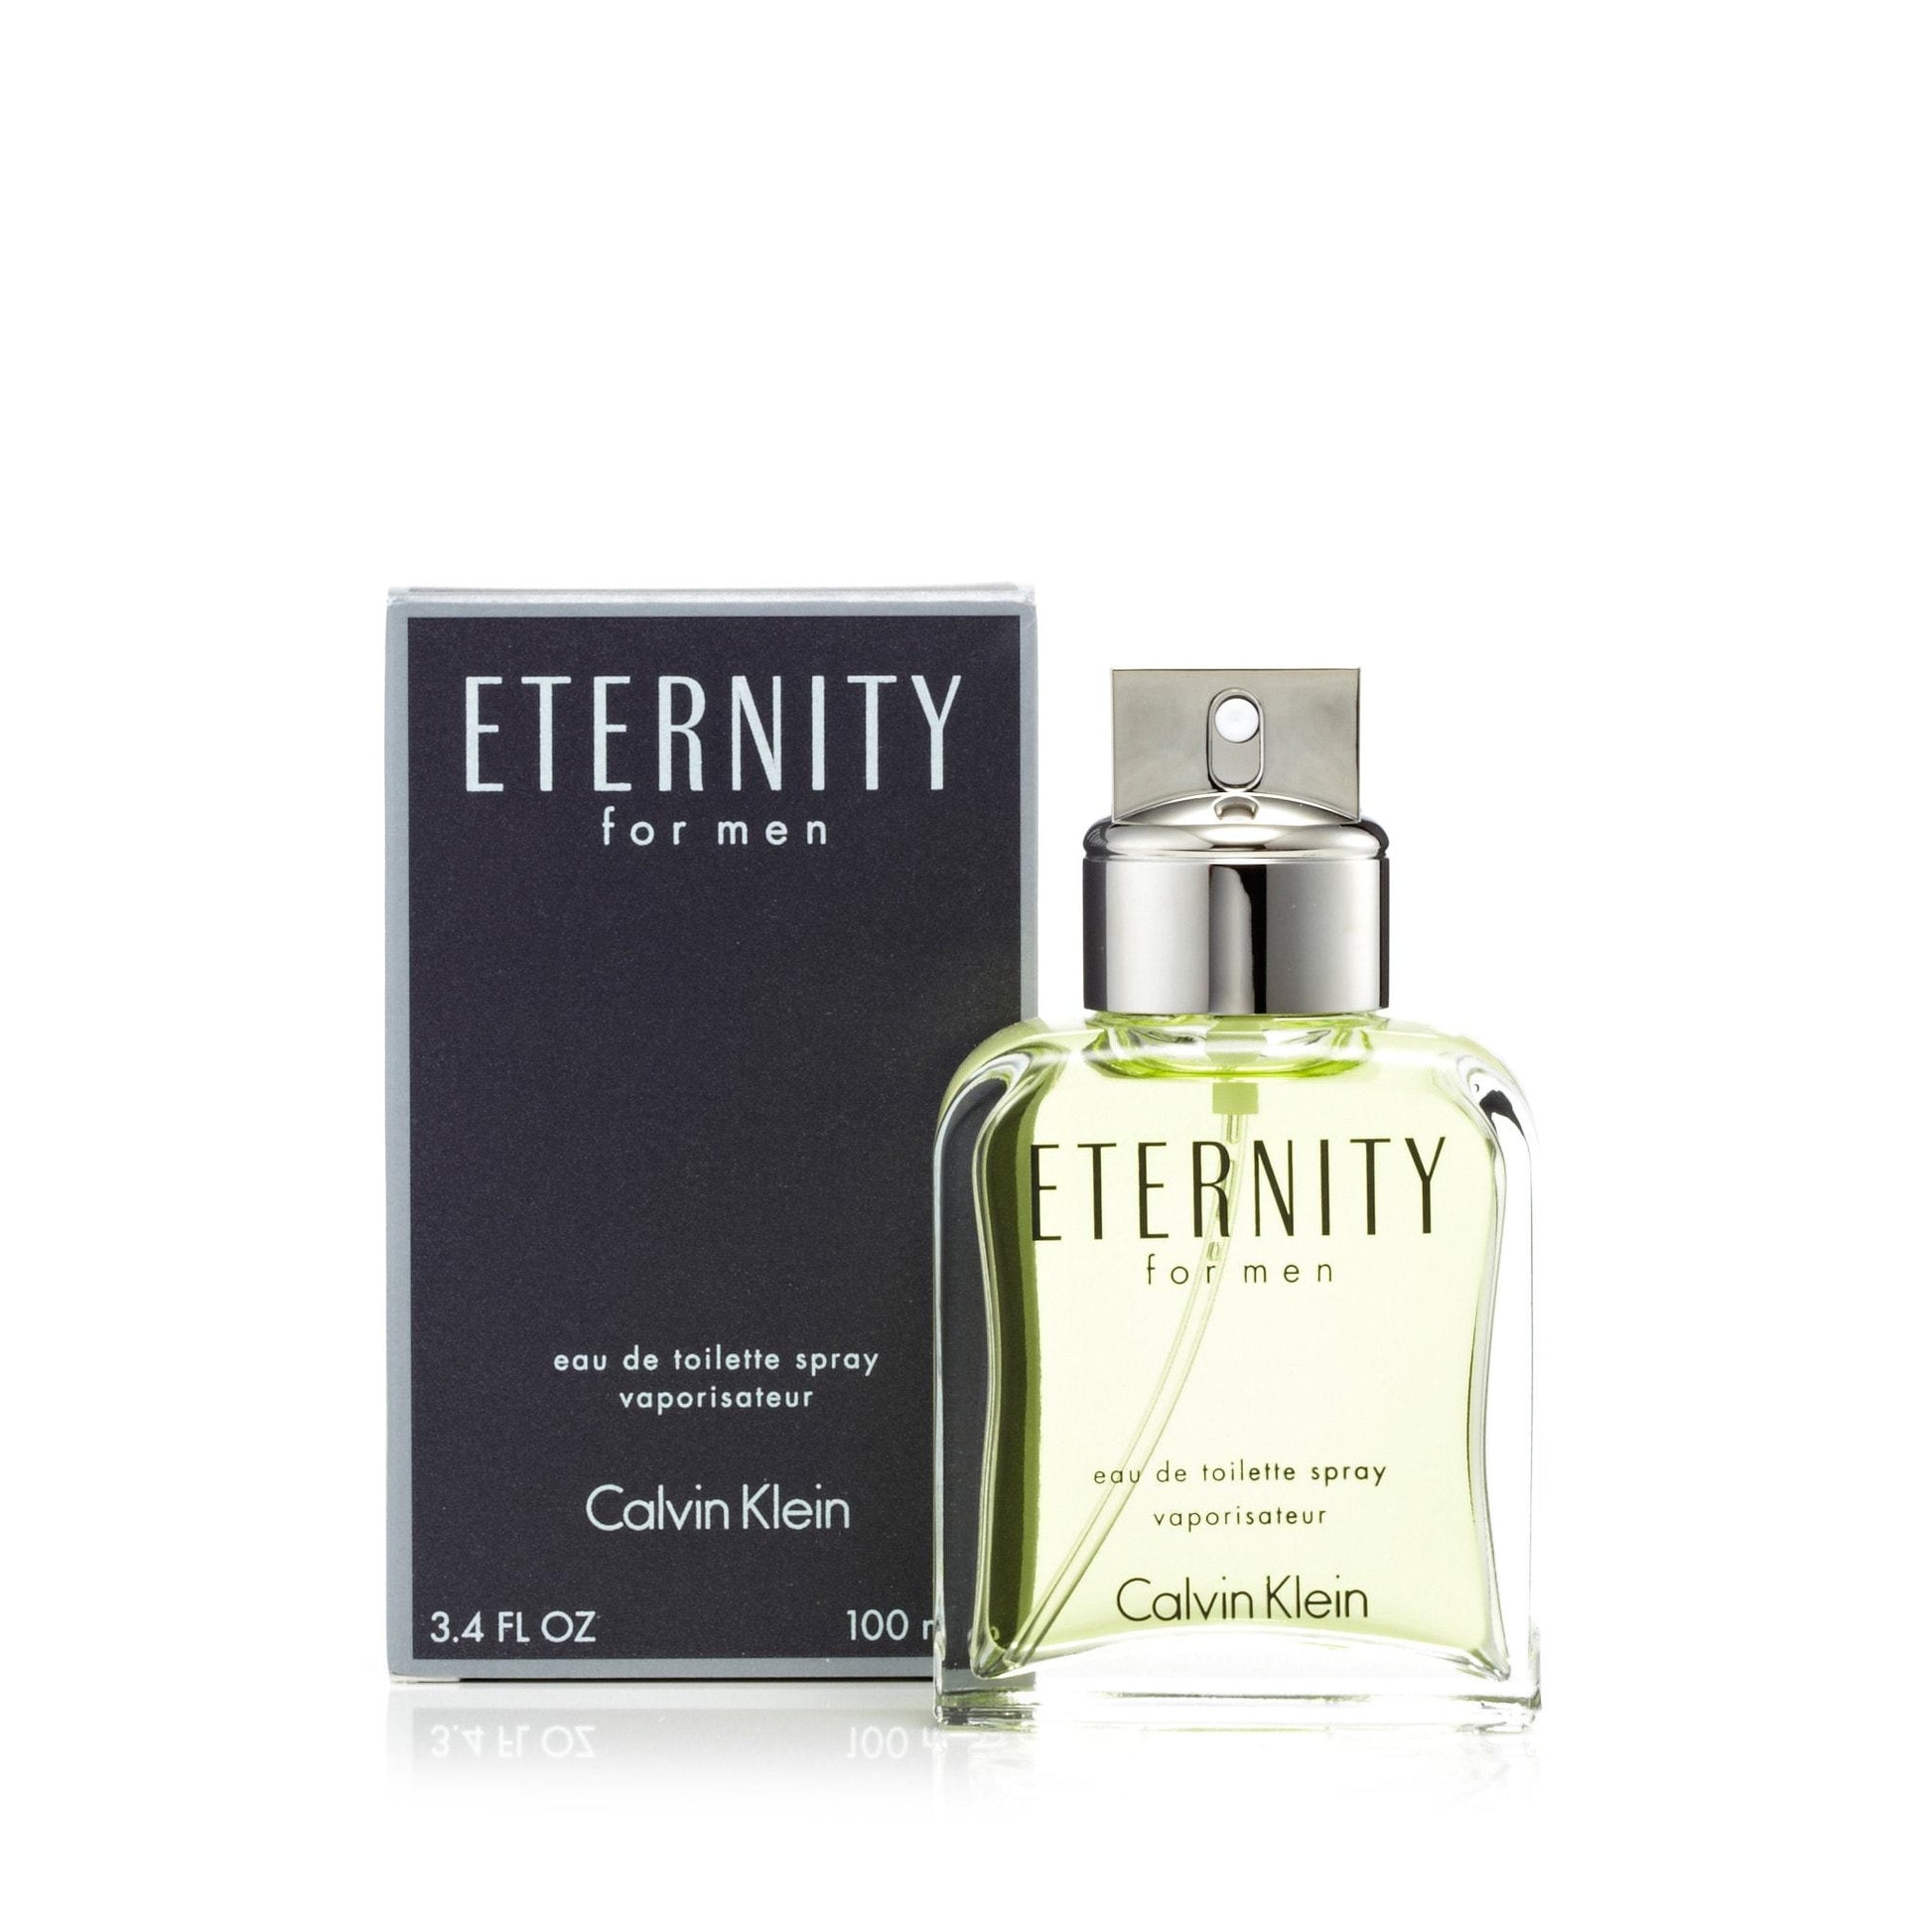 Eternity Eau de Toilette Spray for Men by Calvin Klein, Product image 8